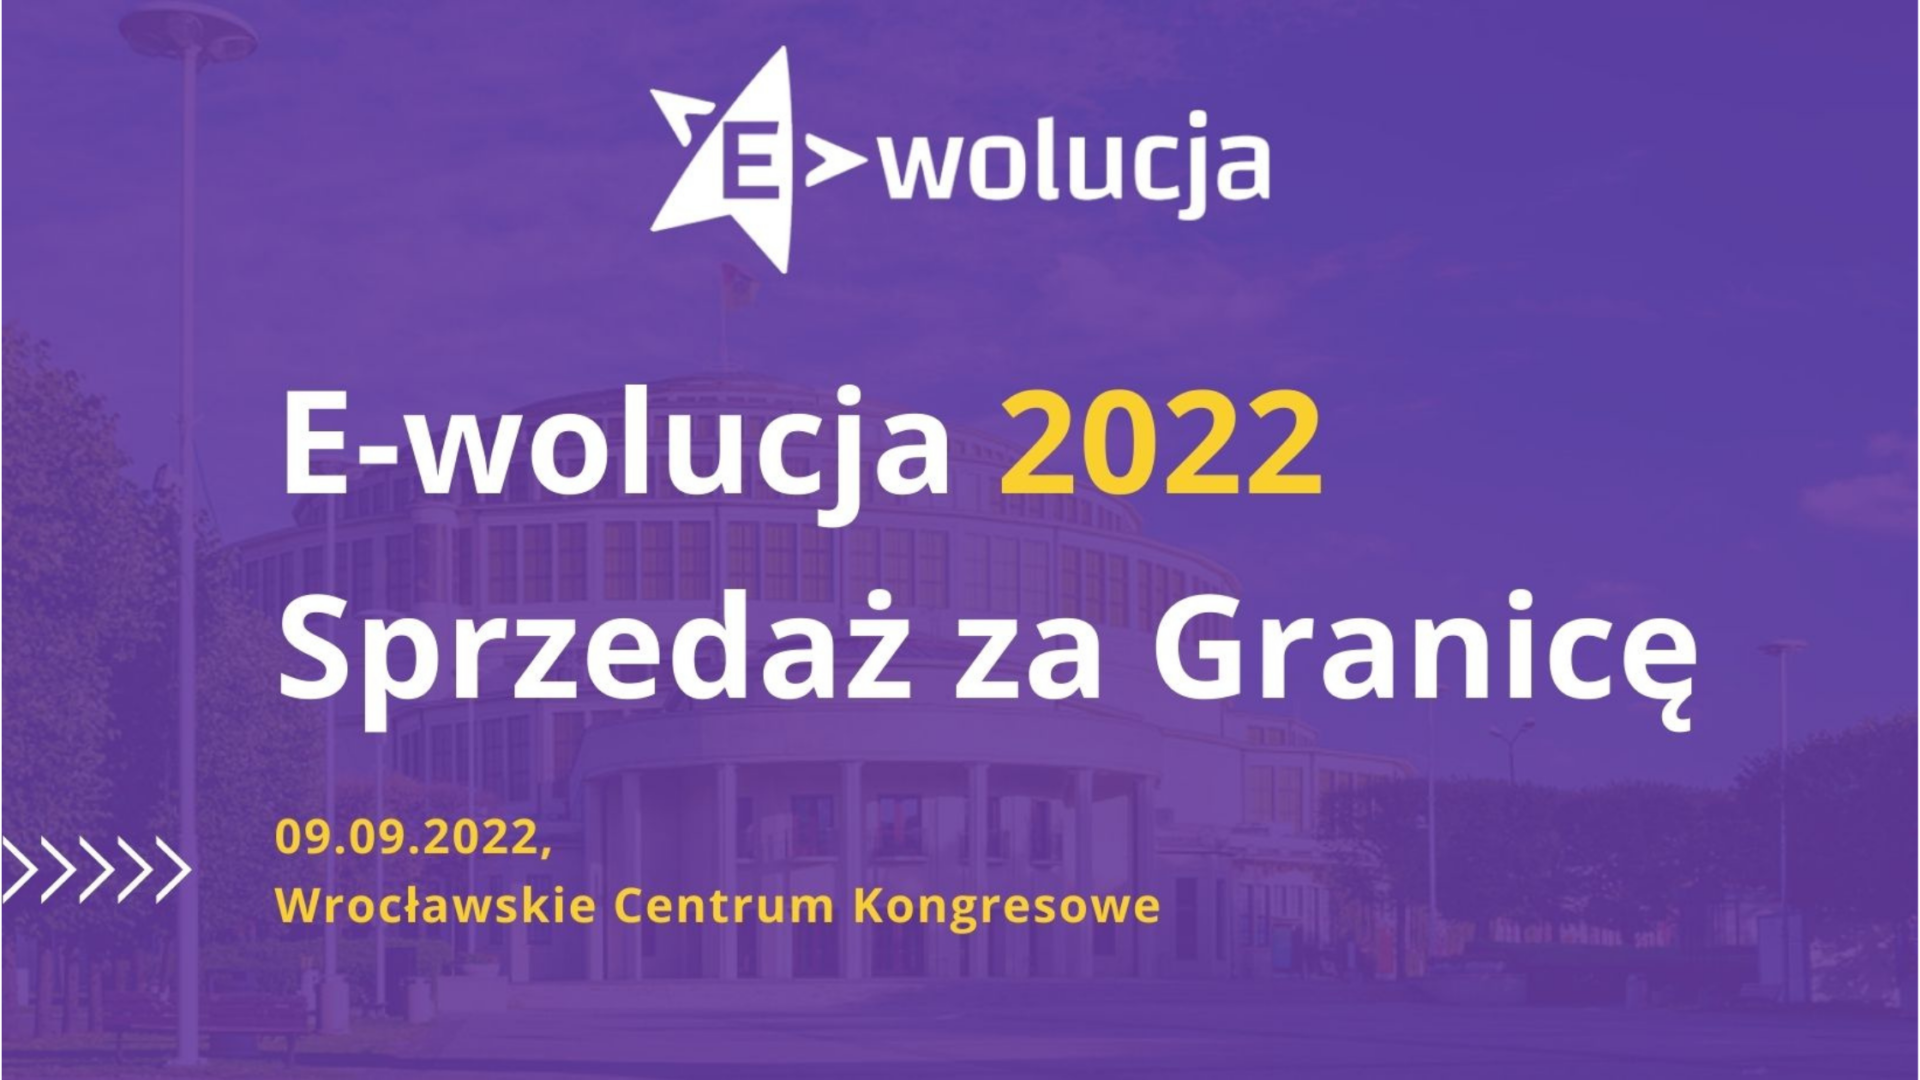 Relacja z konferencji E-wolucja - Sprzedaż za Granicę  (9 września 2022 r. - Wrocław)